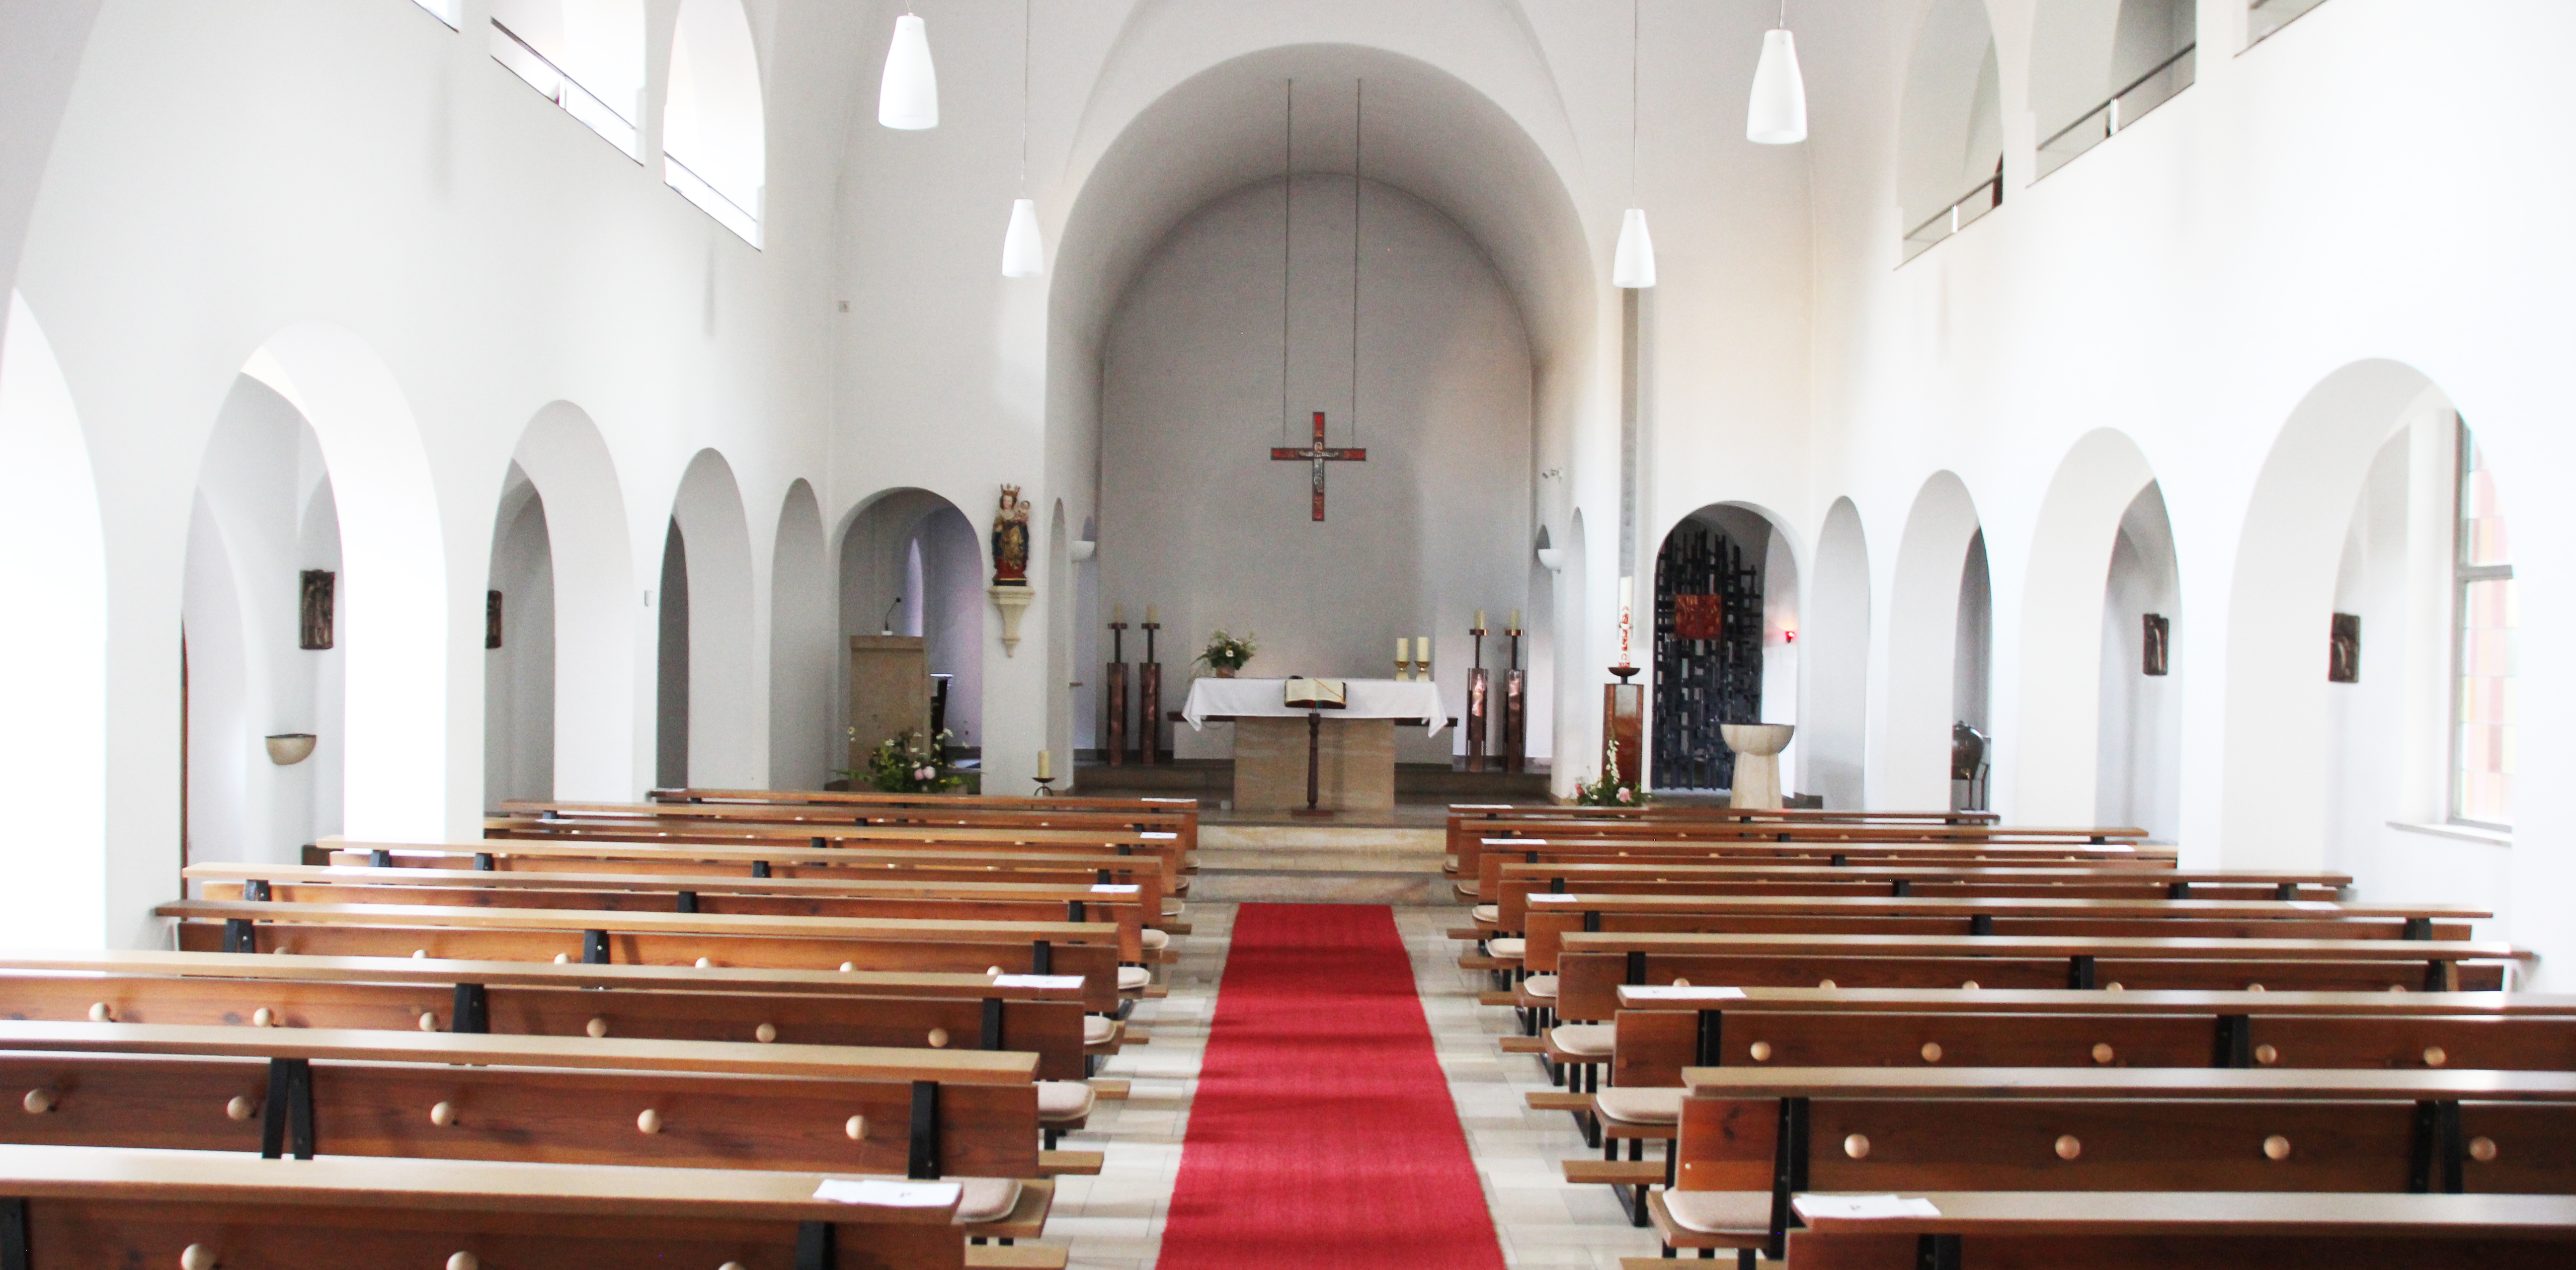 Antonius_Orte_Kirche_210728_5_1 | Kath. Pfarrei Selige Märtyrer vom Münchner Platz - Räumlichkeiten